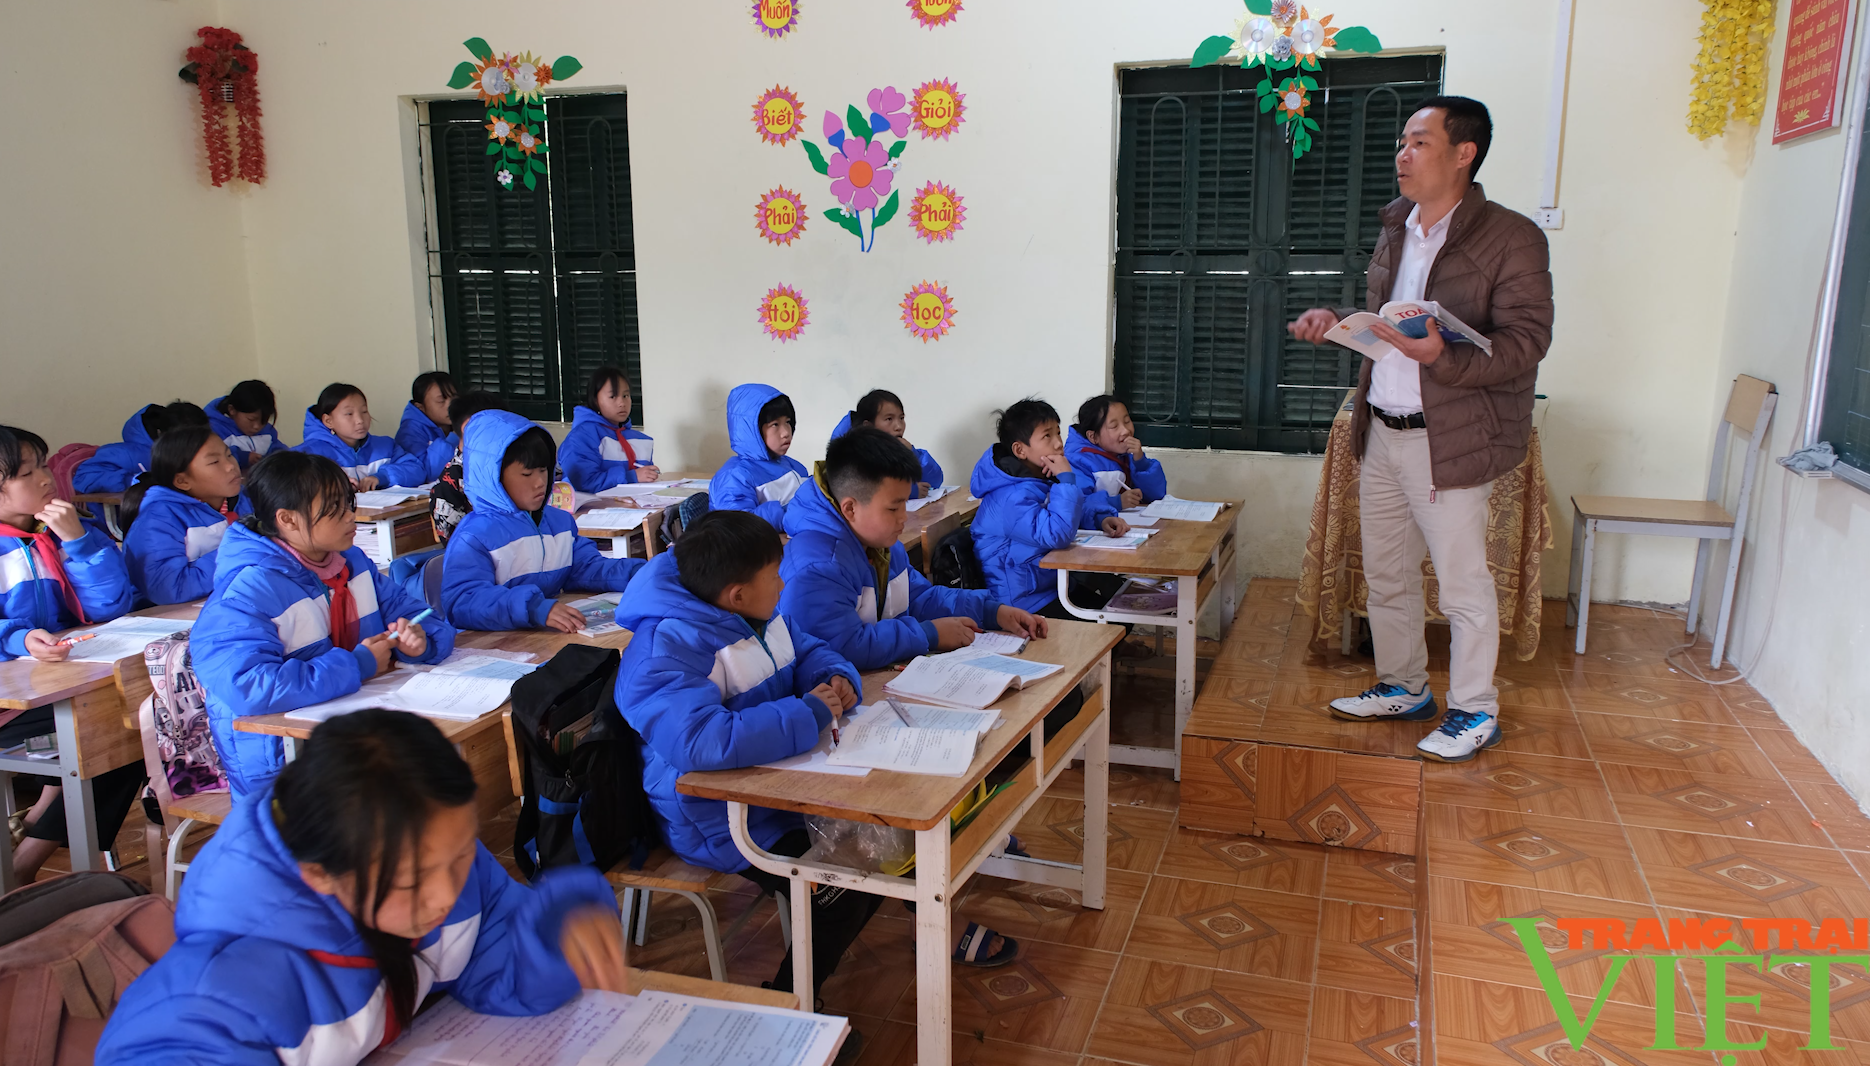 Chuyển đổi số ở trường vùng cao Tả Ngảo của Lai Châu, thầy cô nhàn việc giảng, học sinh ngày một tiến bộ- Ảnh 2.